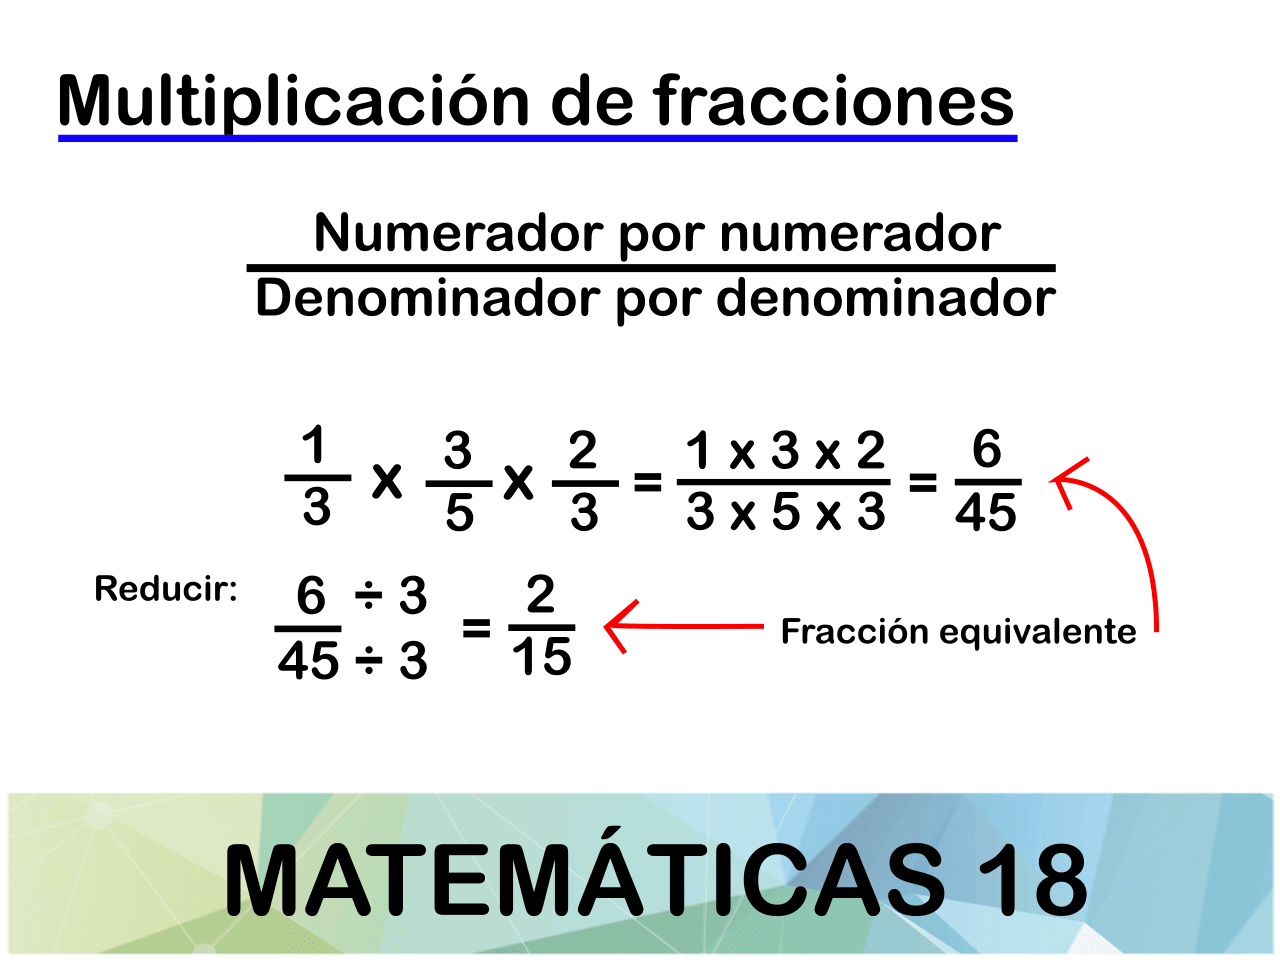 Cómo se hacen las fracciones de multiplicaciones